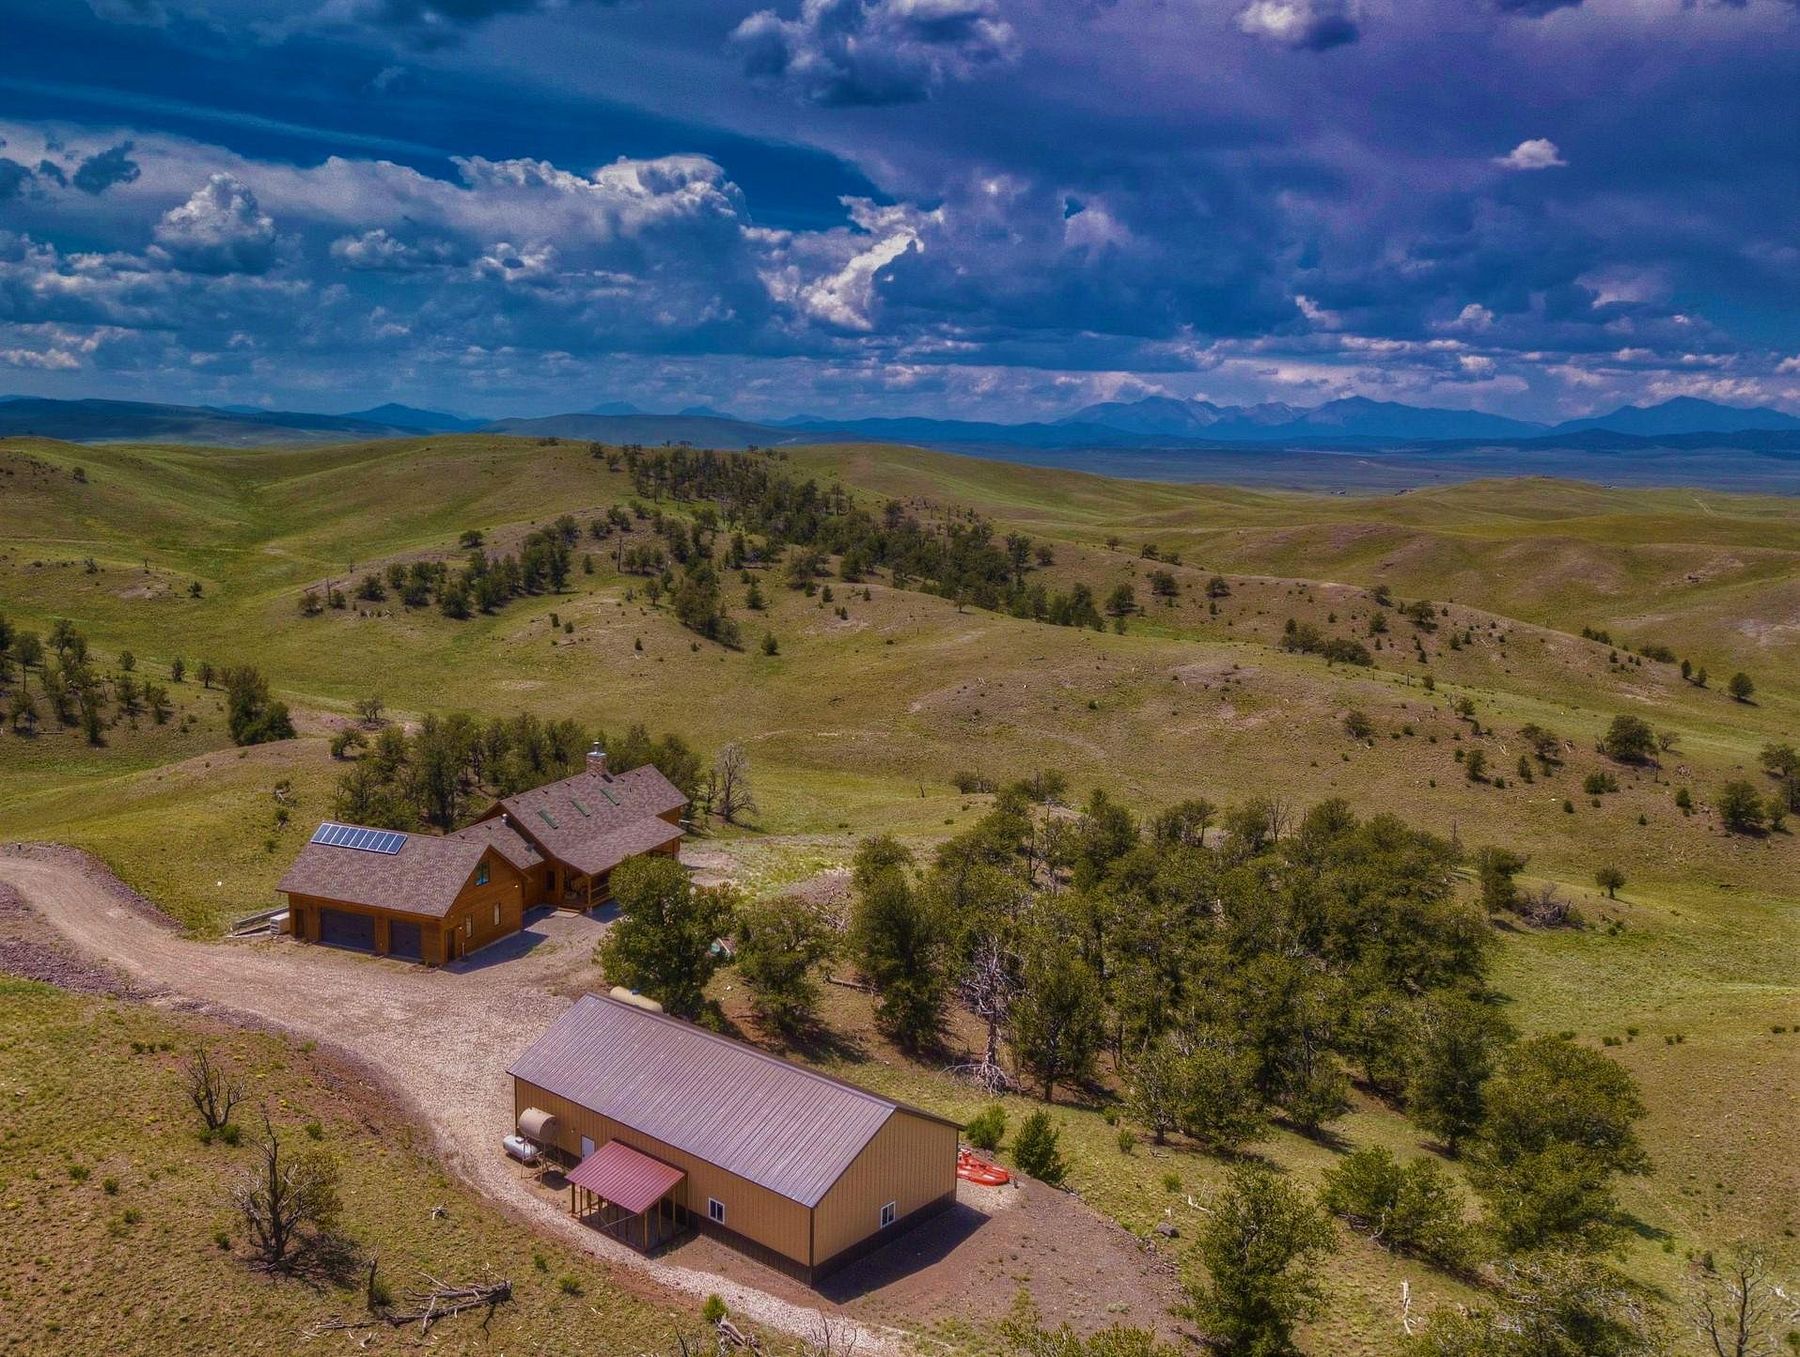 821 Acres of Mixed-Use Land & Home Hartsel, Colorado, CO